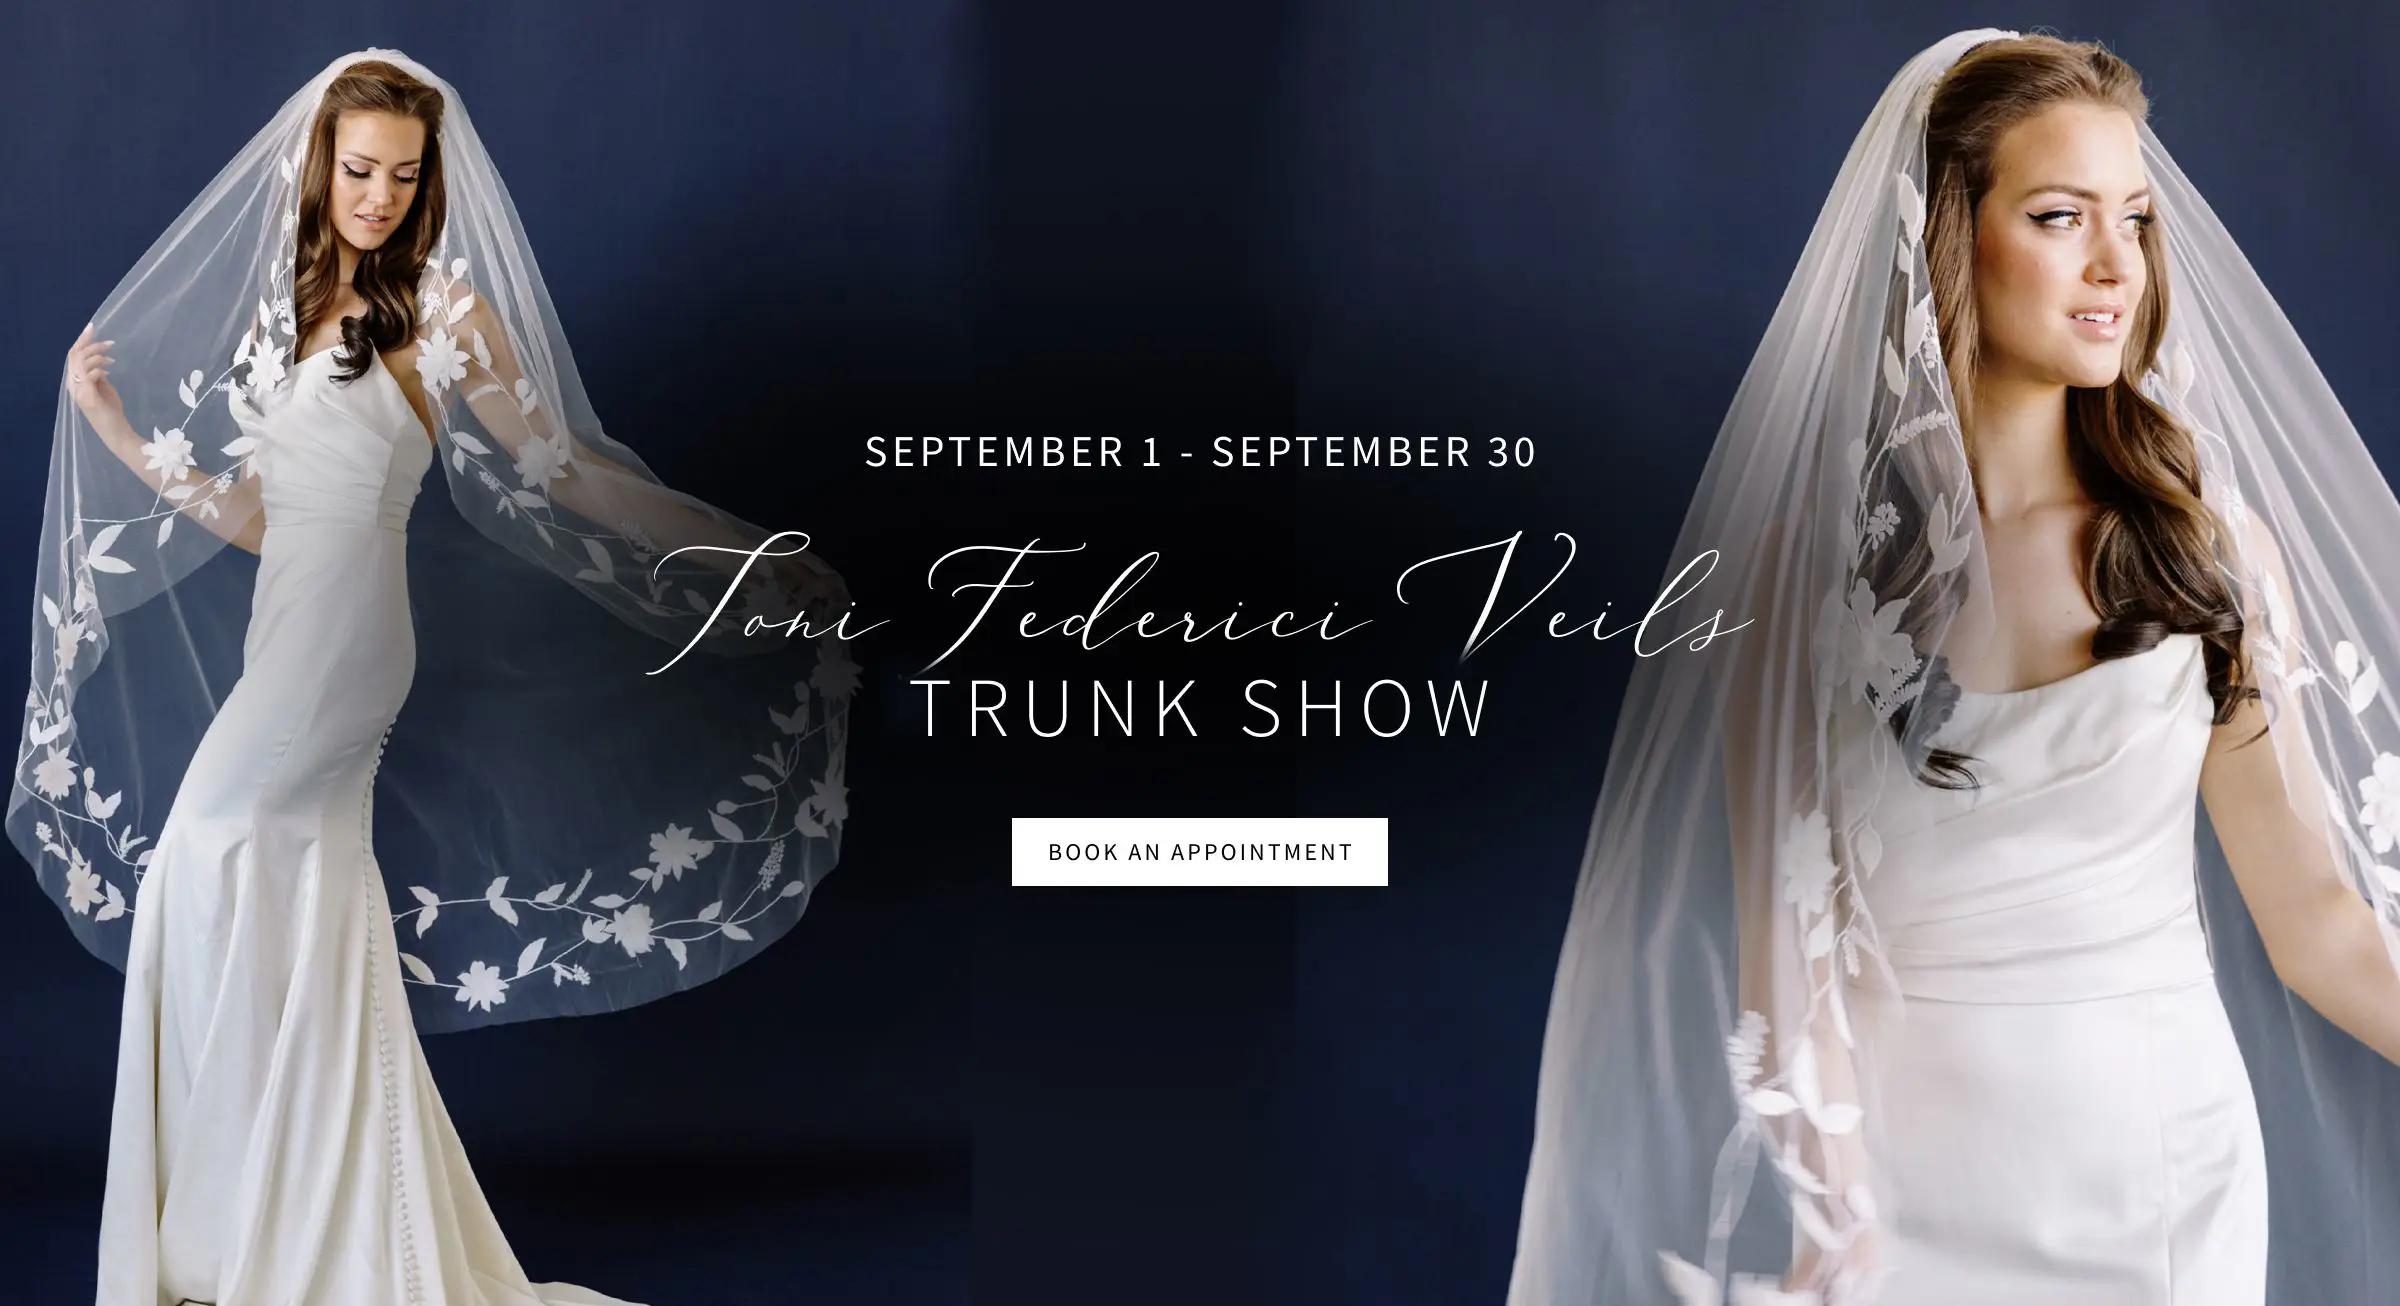 Toni Federici Veils Trunk Show | September 1 - September 30 banner for desktop